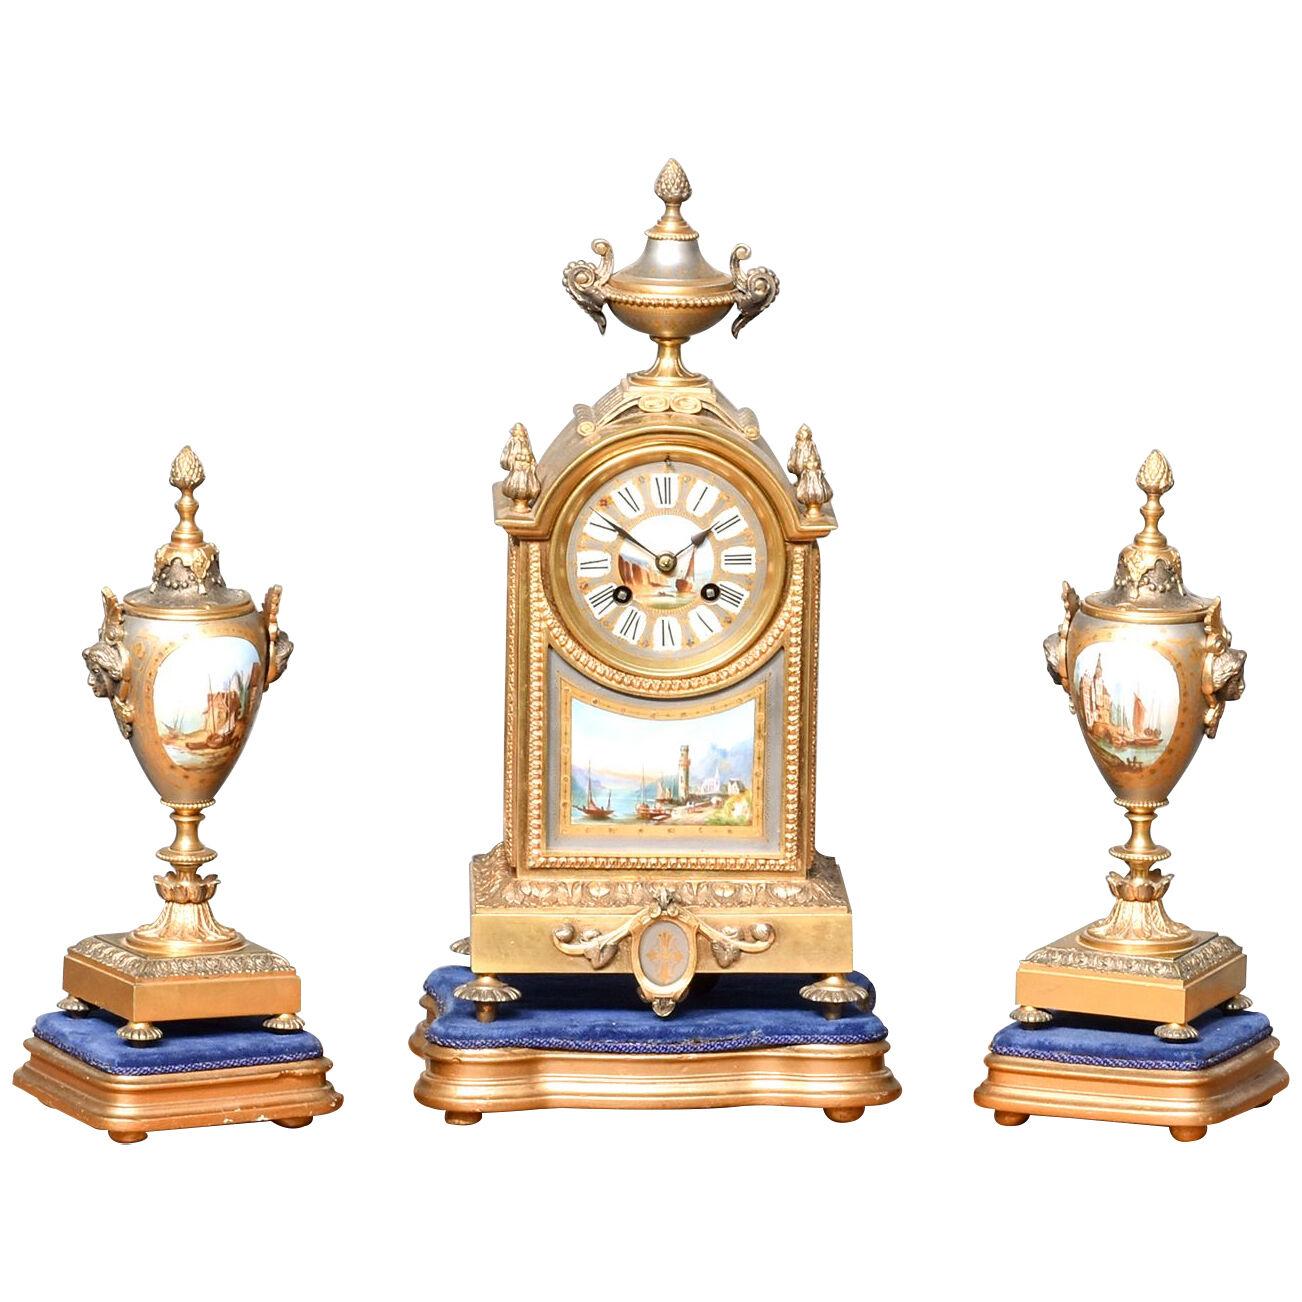 3 Piece Gilt and Porcelain Clock Set